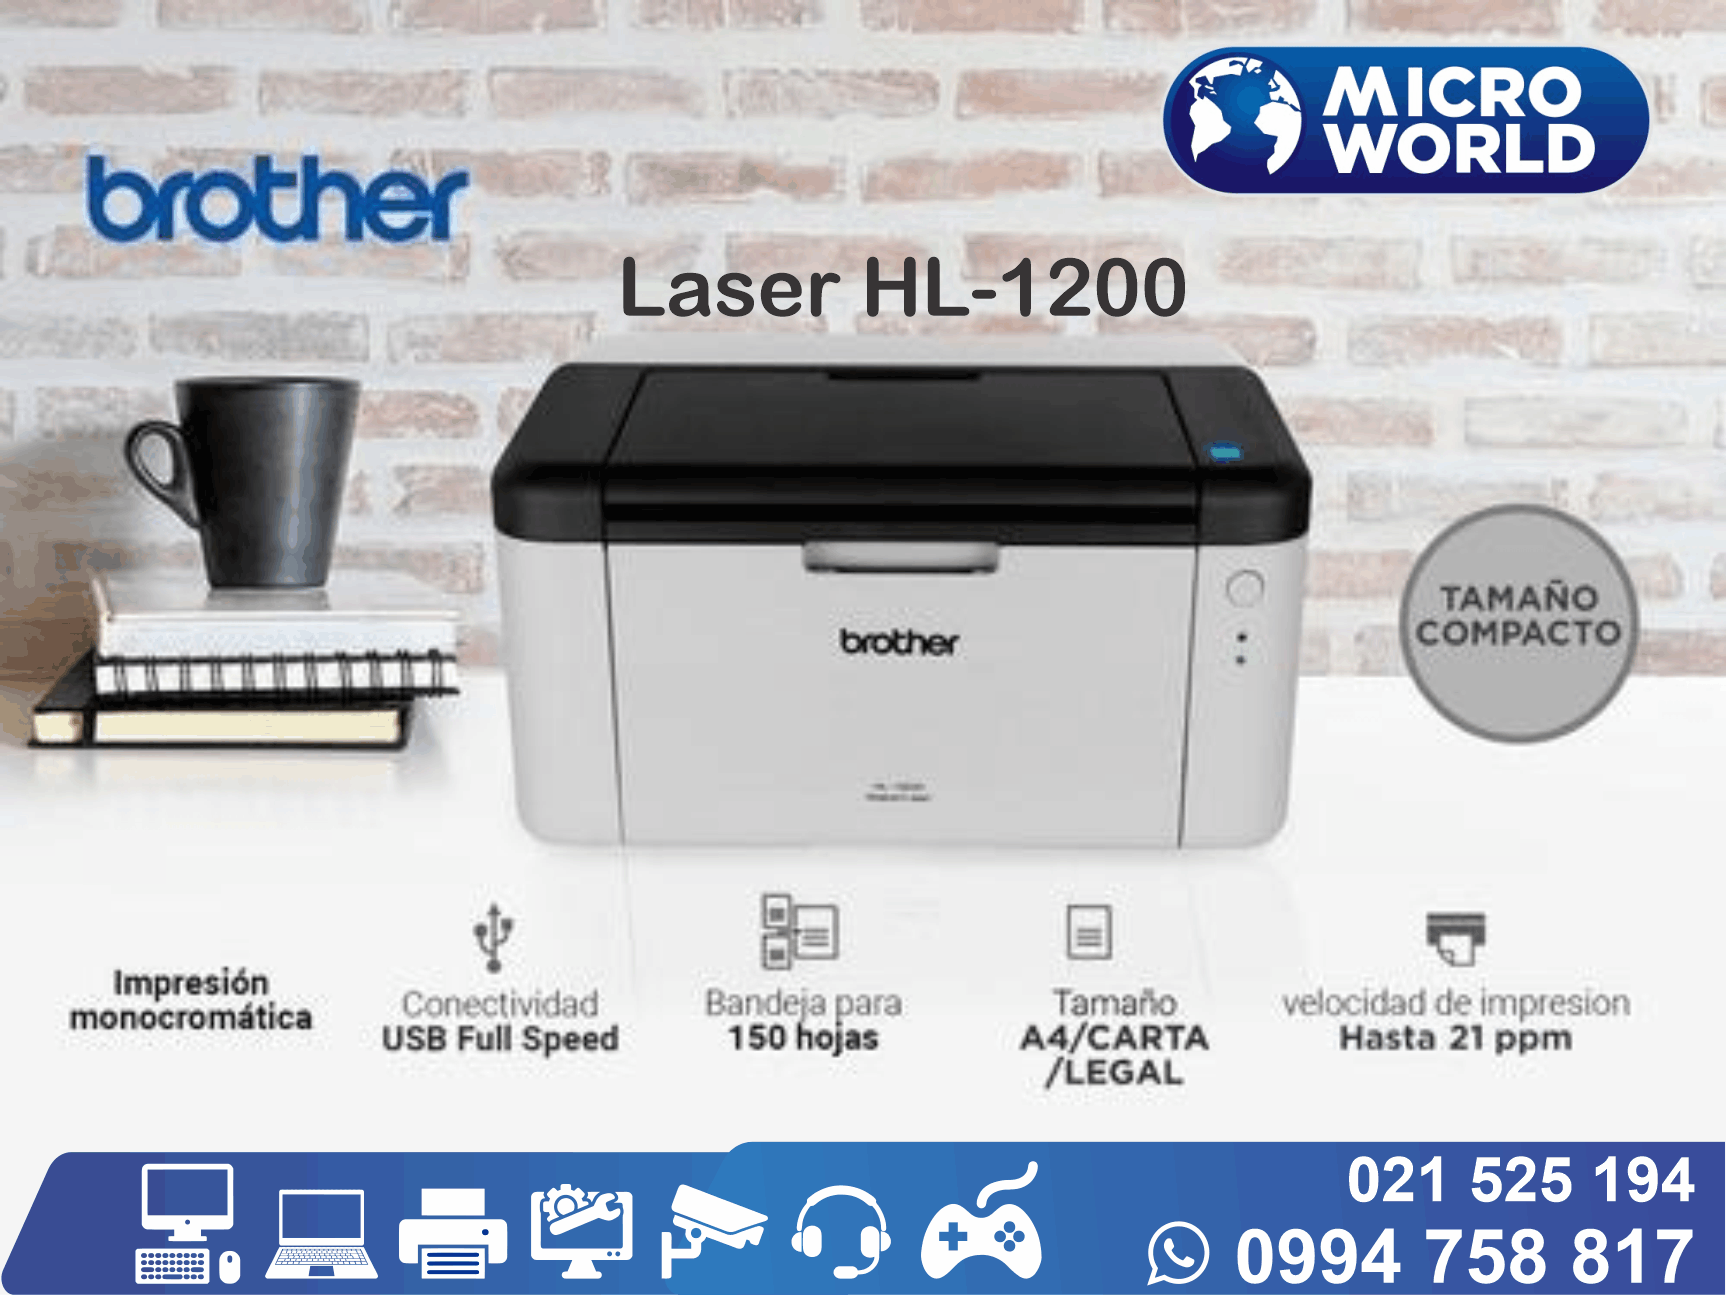 Impresora Brother Laser HL-1200 – Microworld S.A.